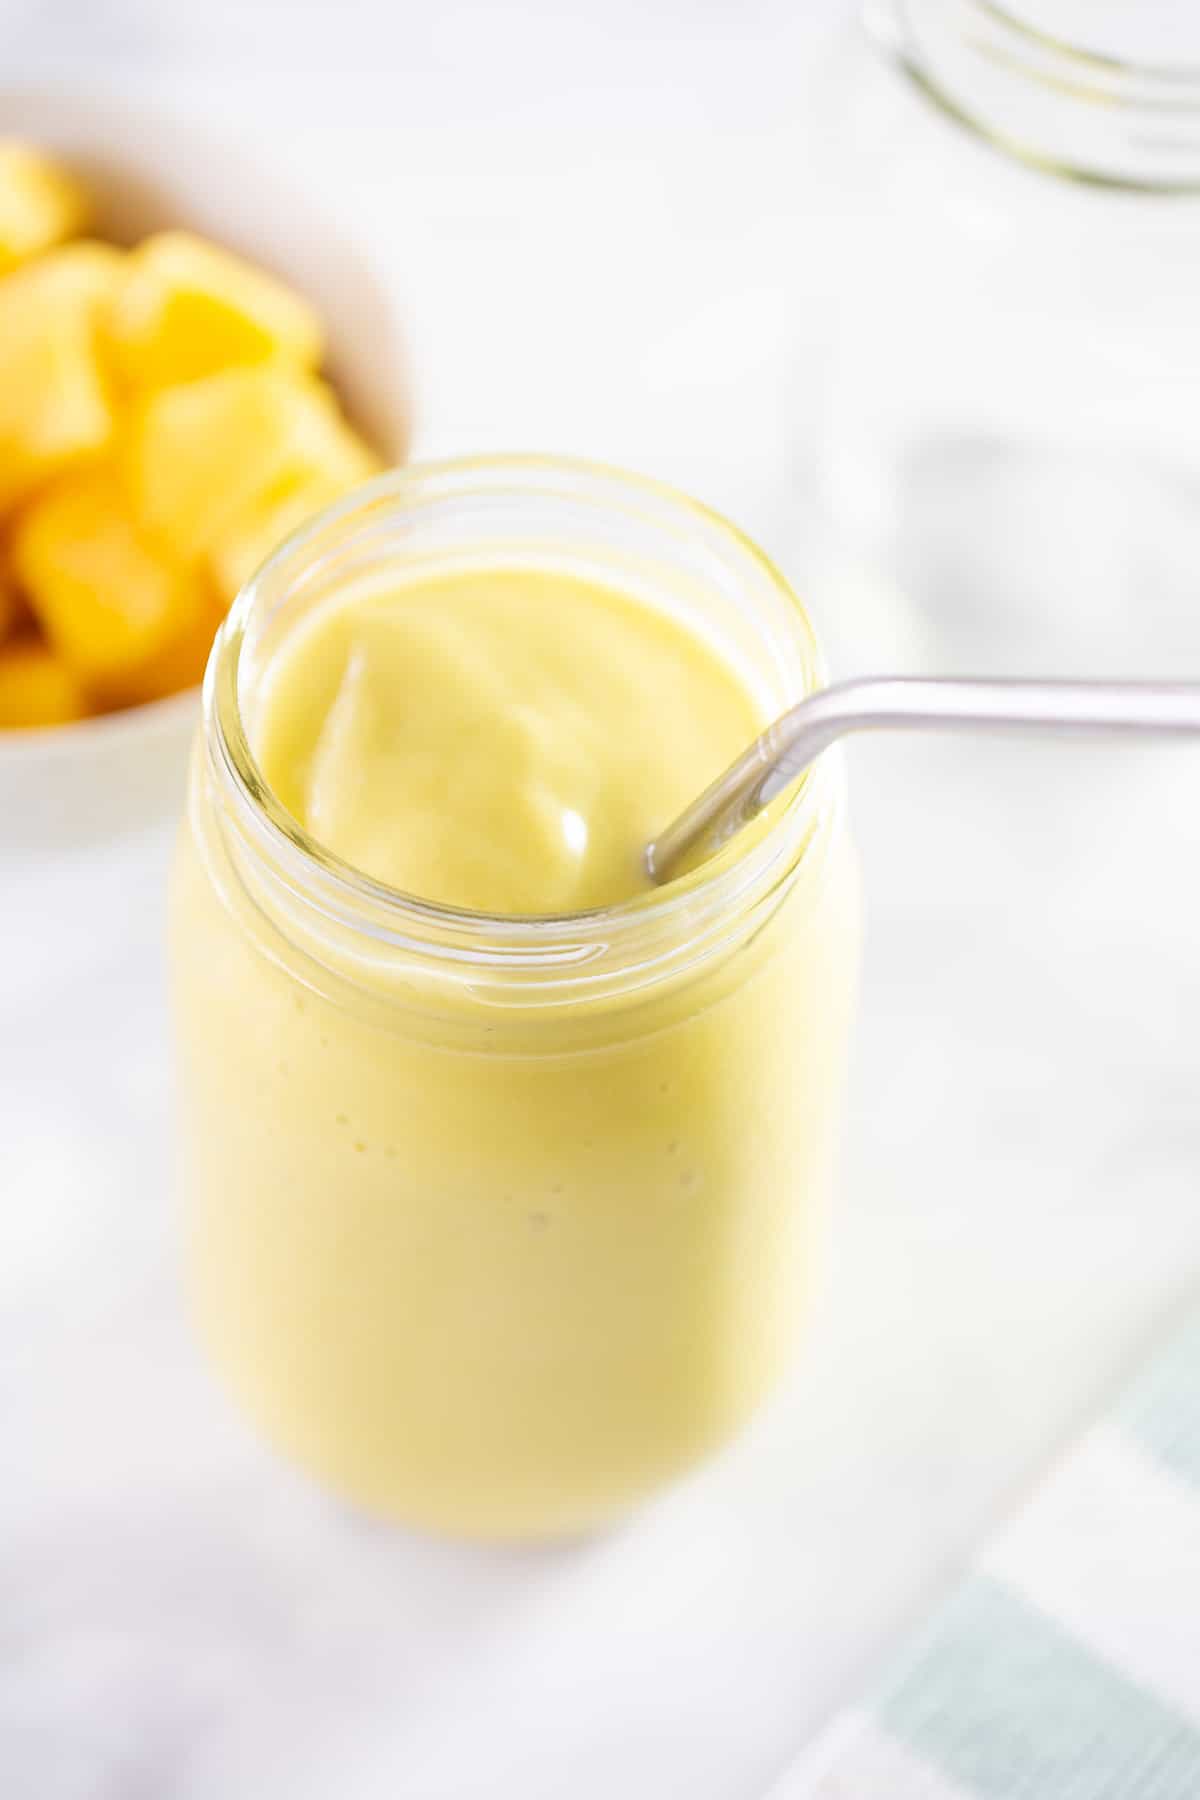 mango smoothie in glass jar with straw